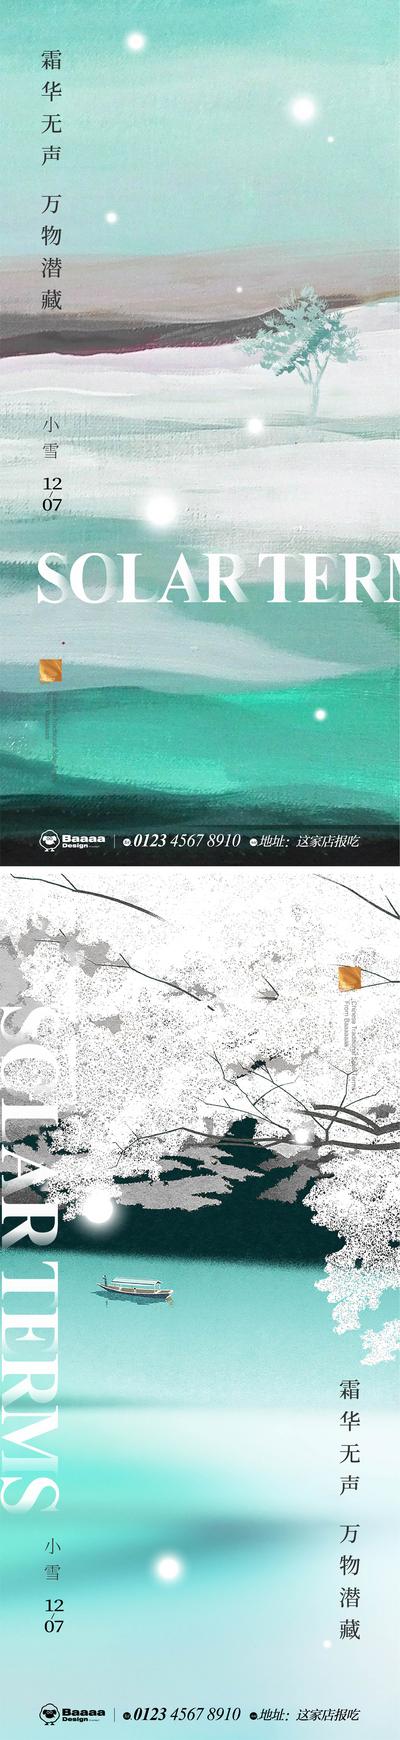 南门网 广告 海报 节气 中式 小雪 大雪 书法 意境 版式 庭院